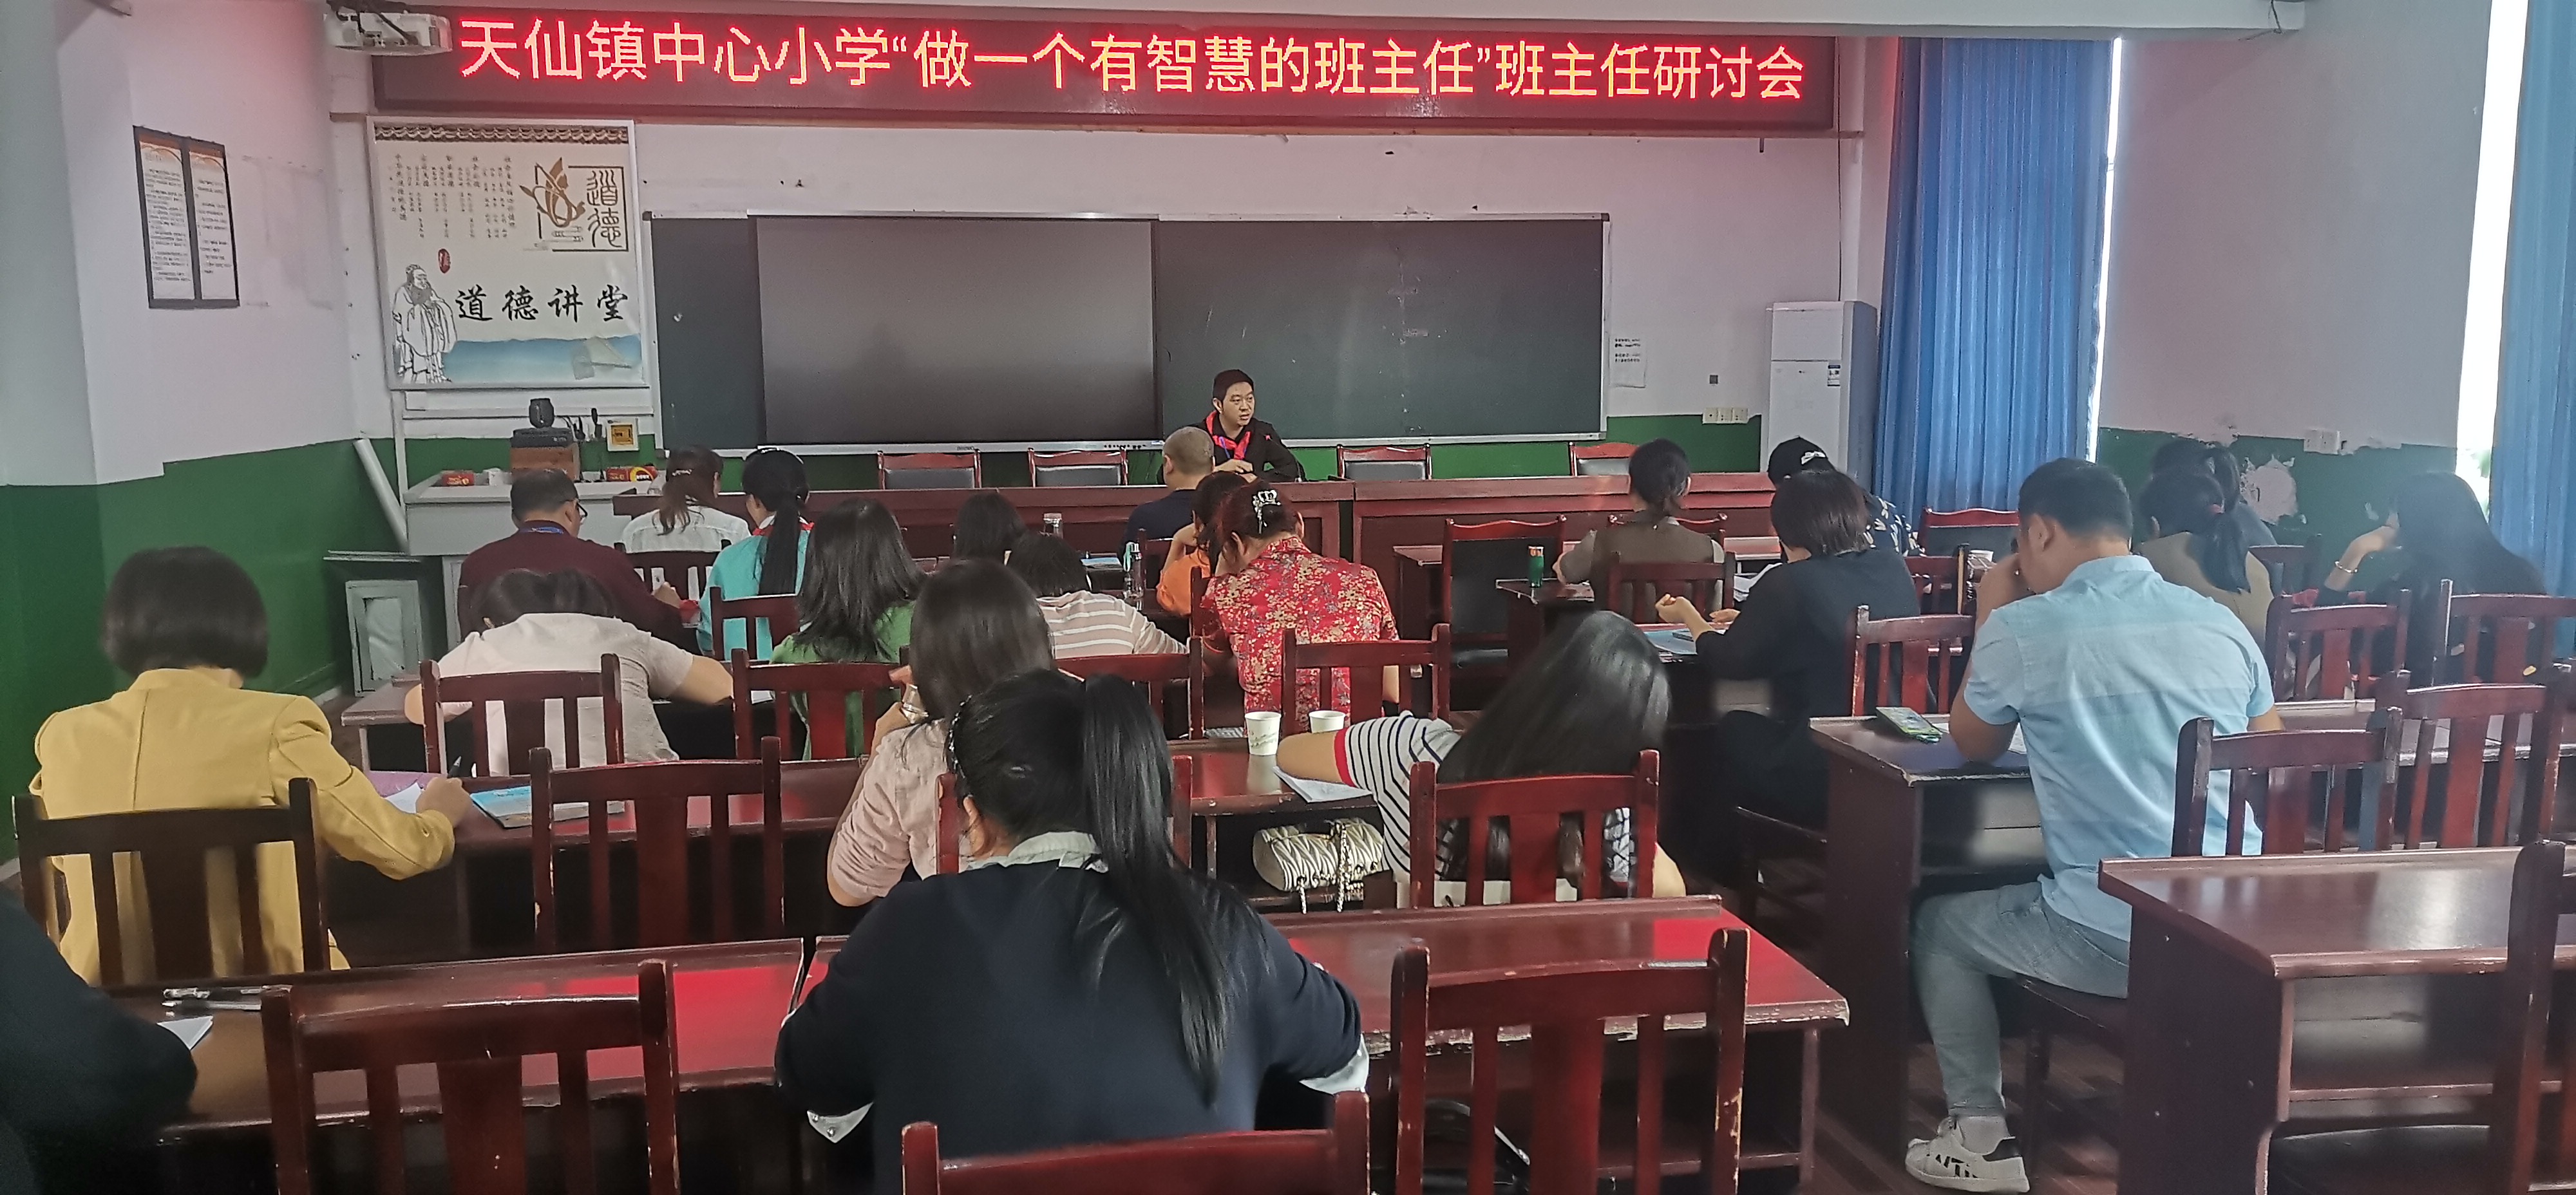 天仙镇中心小学召开“做一个有智慧的班主任”研讨会